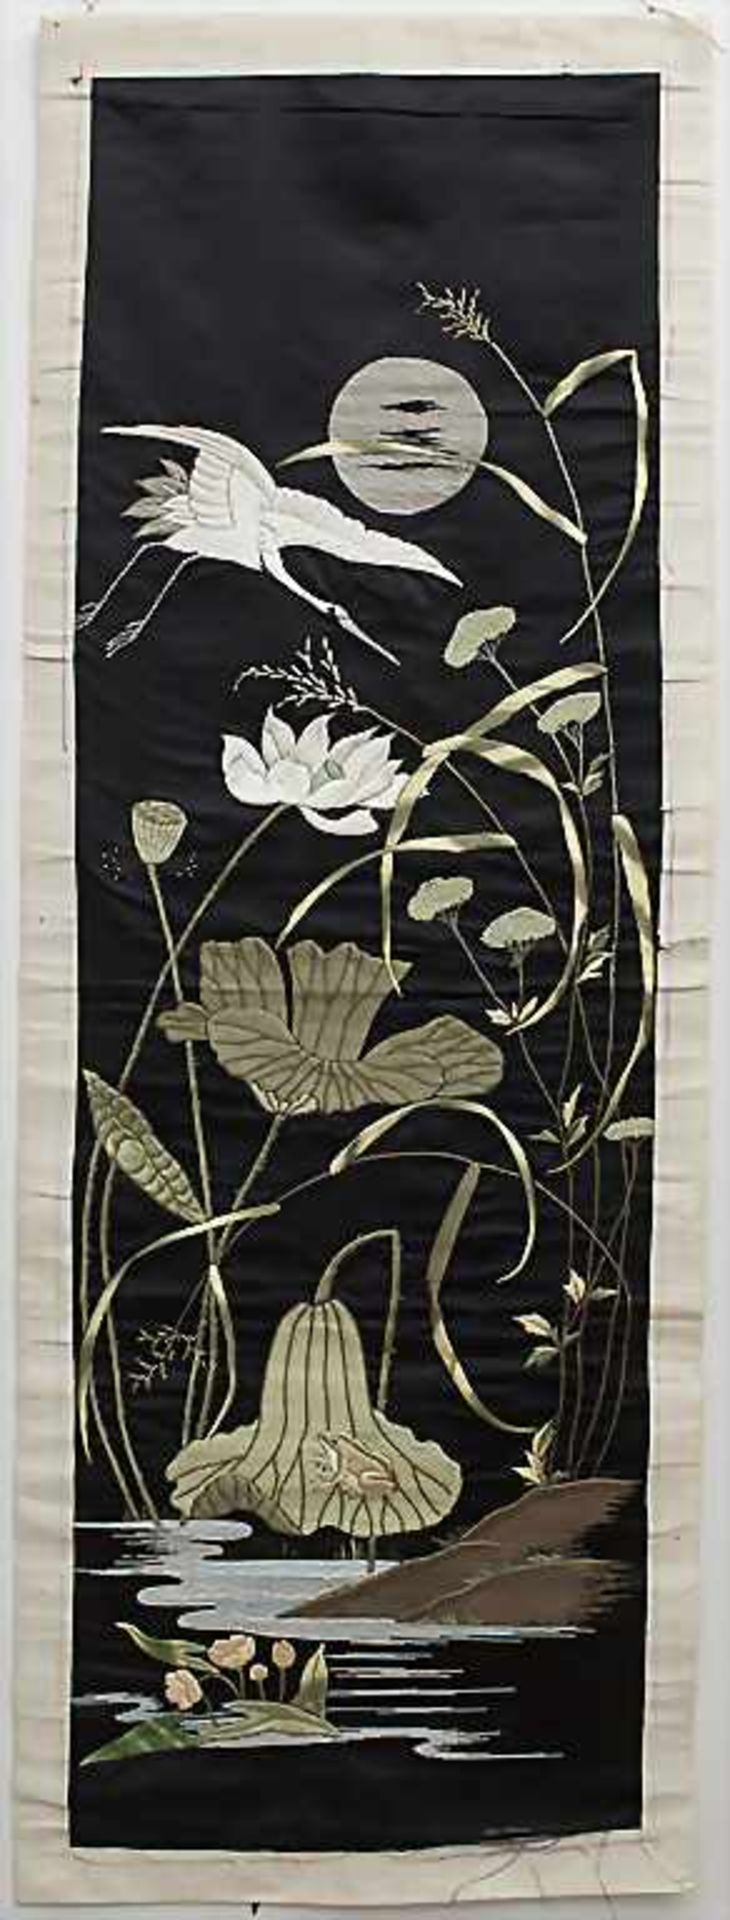 Seiden-Wandbehang 'Kranich'/ A silk wall hanging 'Crane', China, 1. Hälfte 20. Jh.